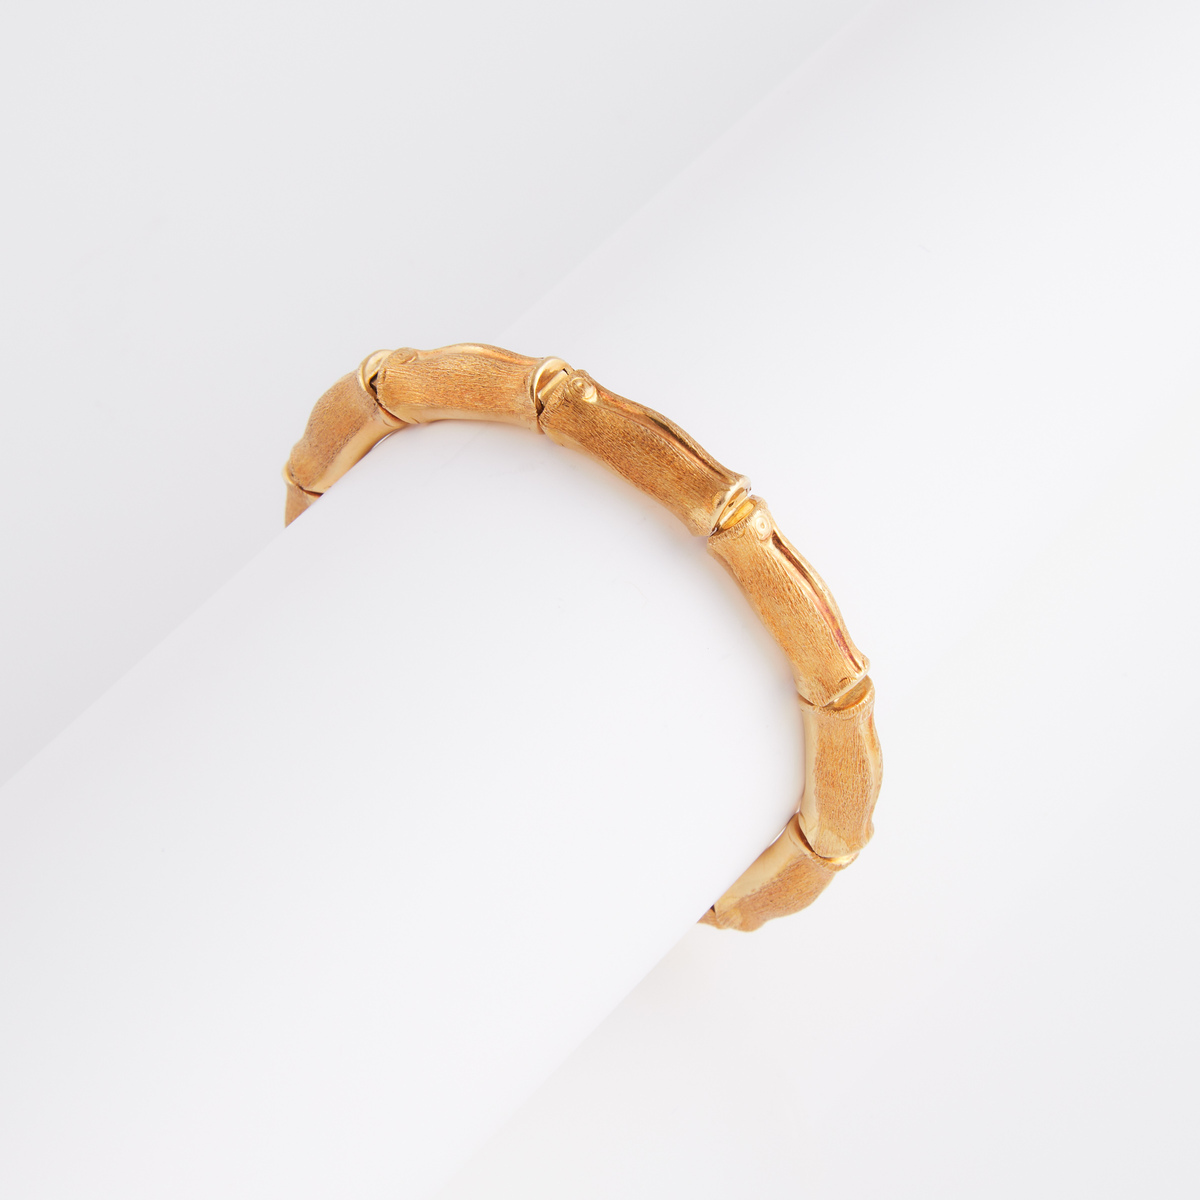 Italian 18k Yellow Gold Bracelet, formed in a bamboo motif